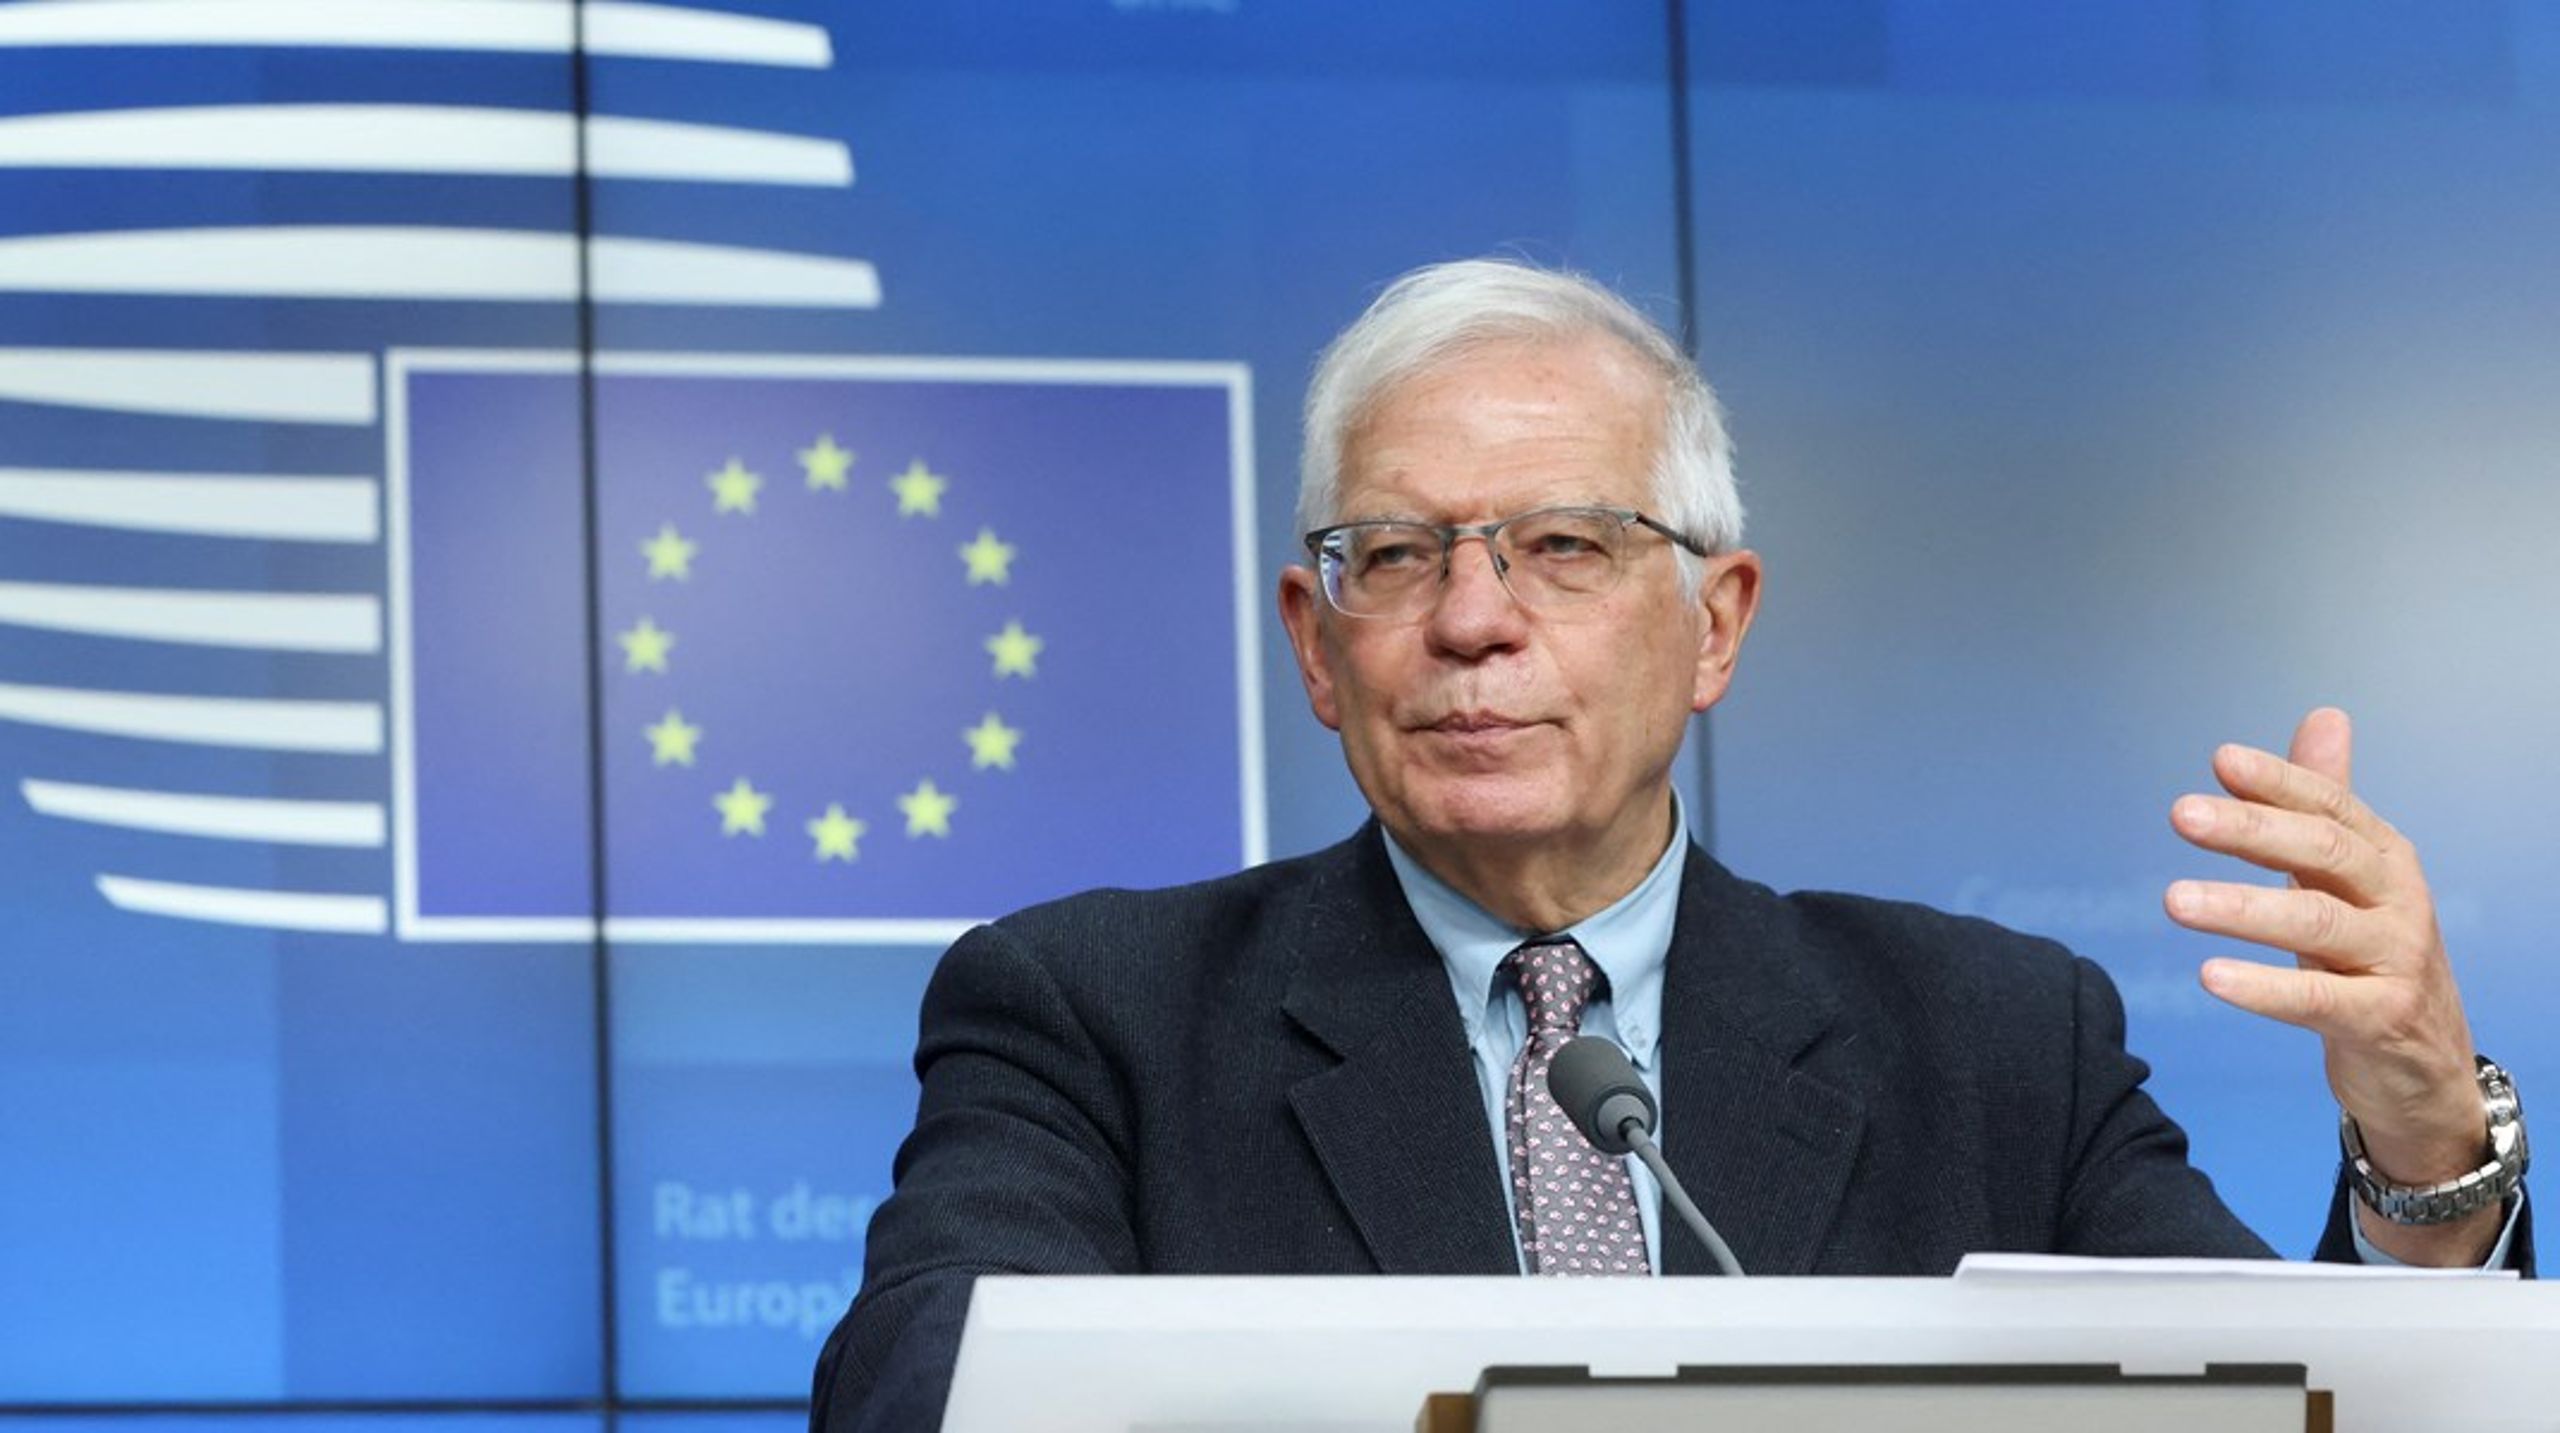 Spanieren Josep Borrell har siden 2019 været udenrigschef i EU. Før da var han Spaniens udenrigsminister. Han har også tidligere været formand for Europa-Parlamentet.